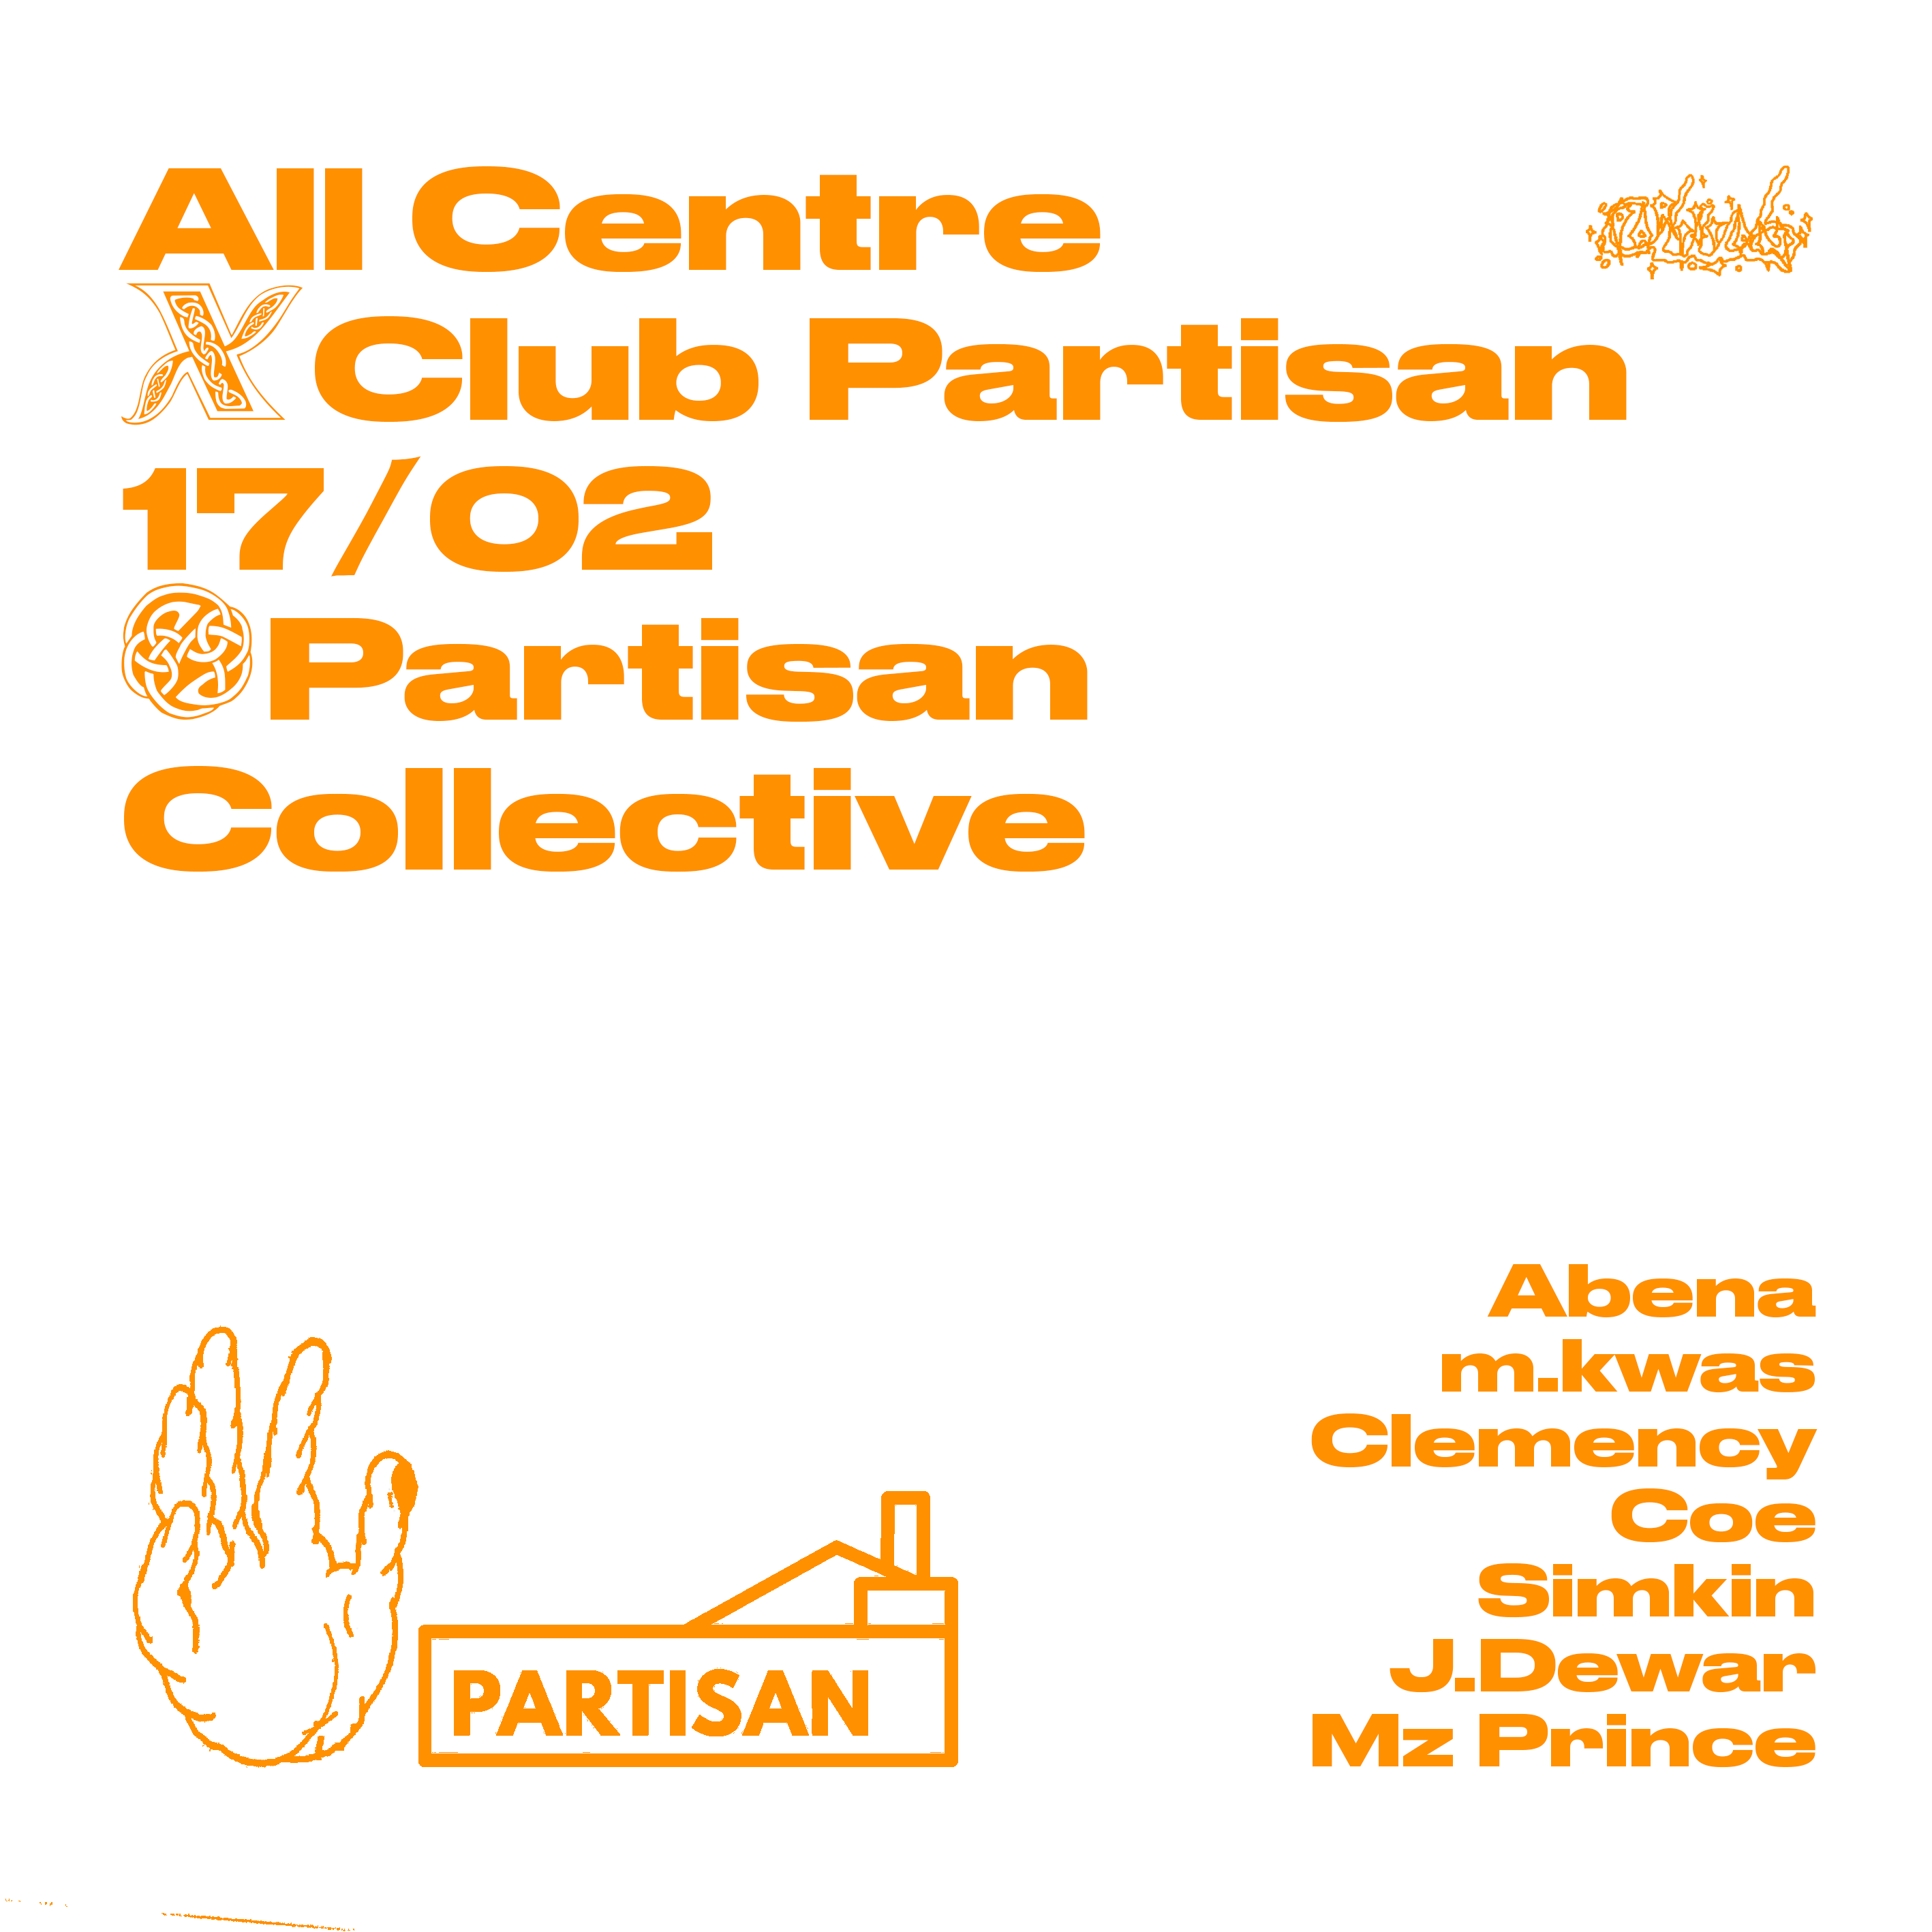 All Centre X Club Partisan 17/02 Partisan Collective Abena m.kwas Clemency Coe Simkin J.Dewar Mx Prince